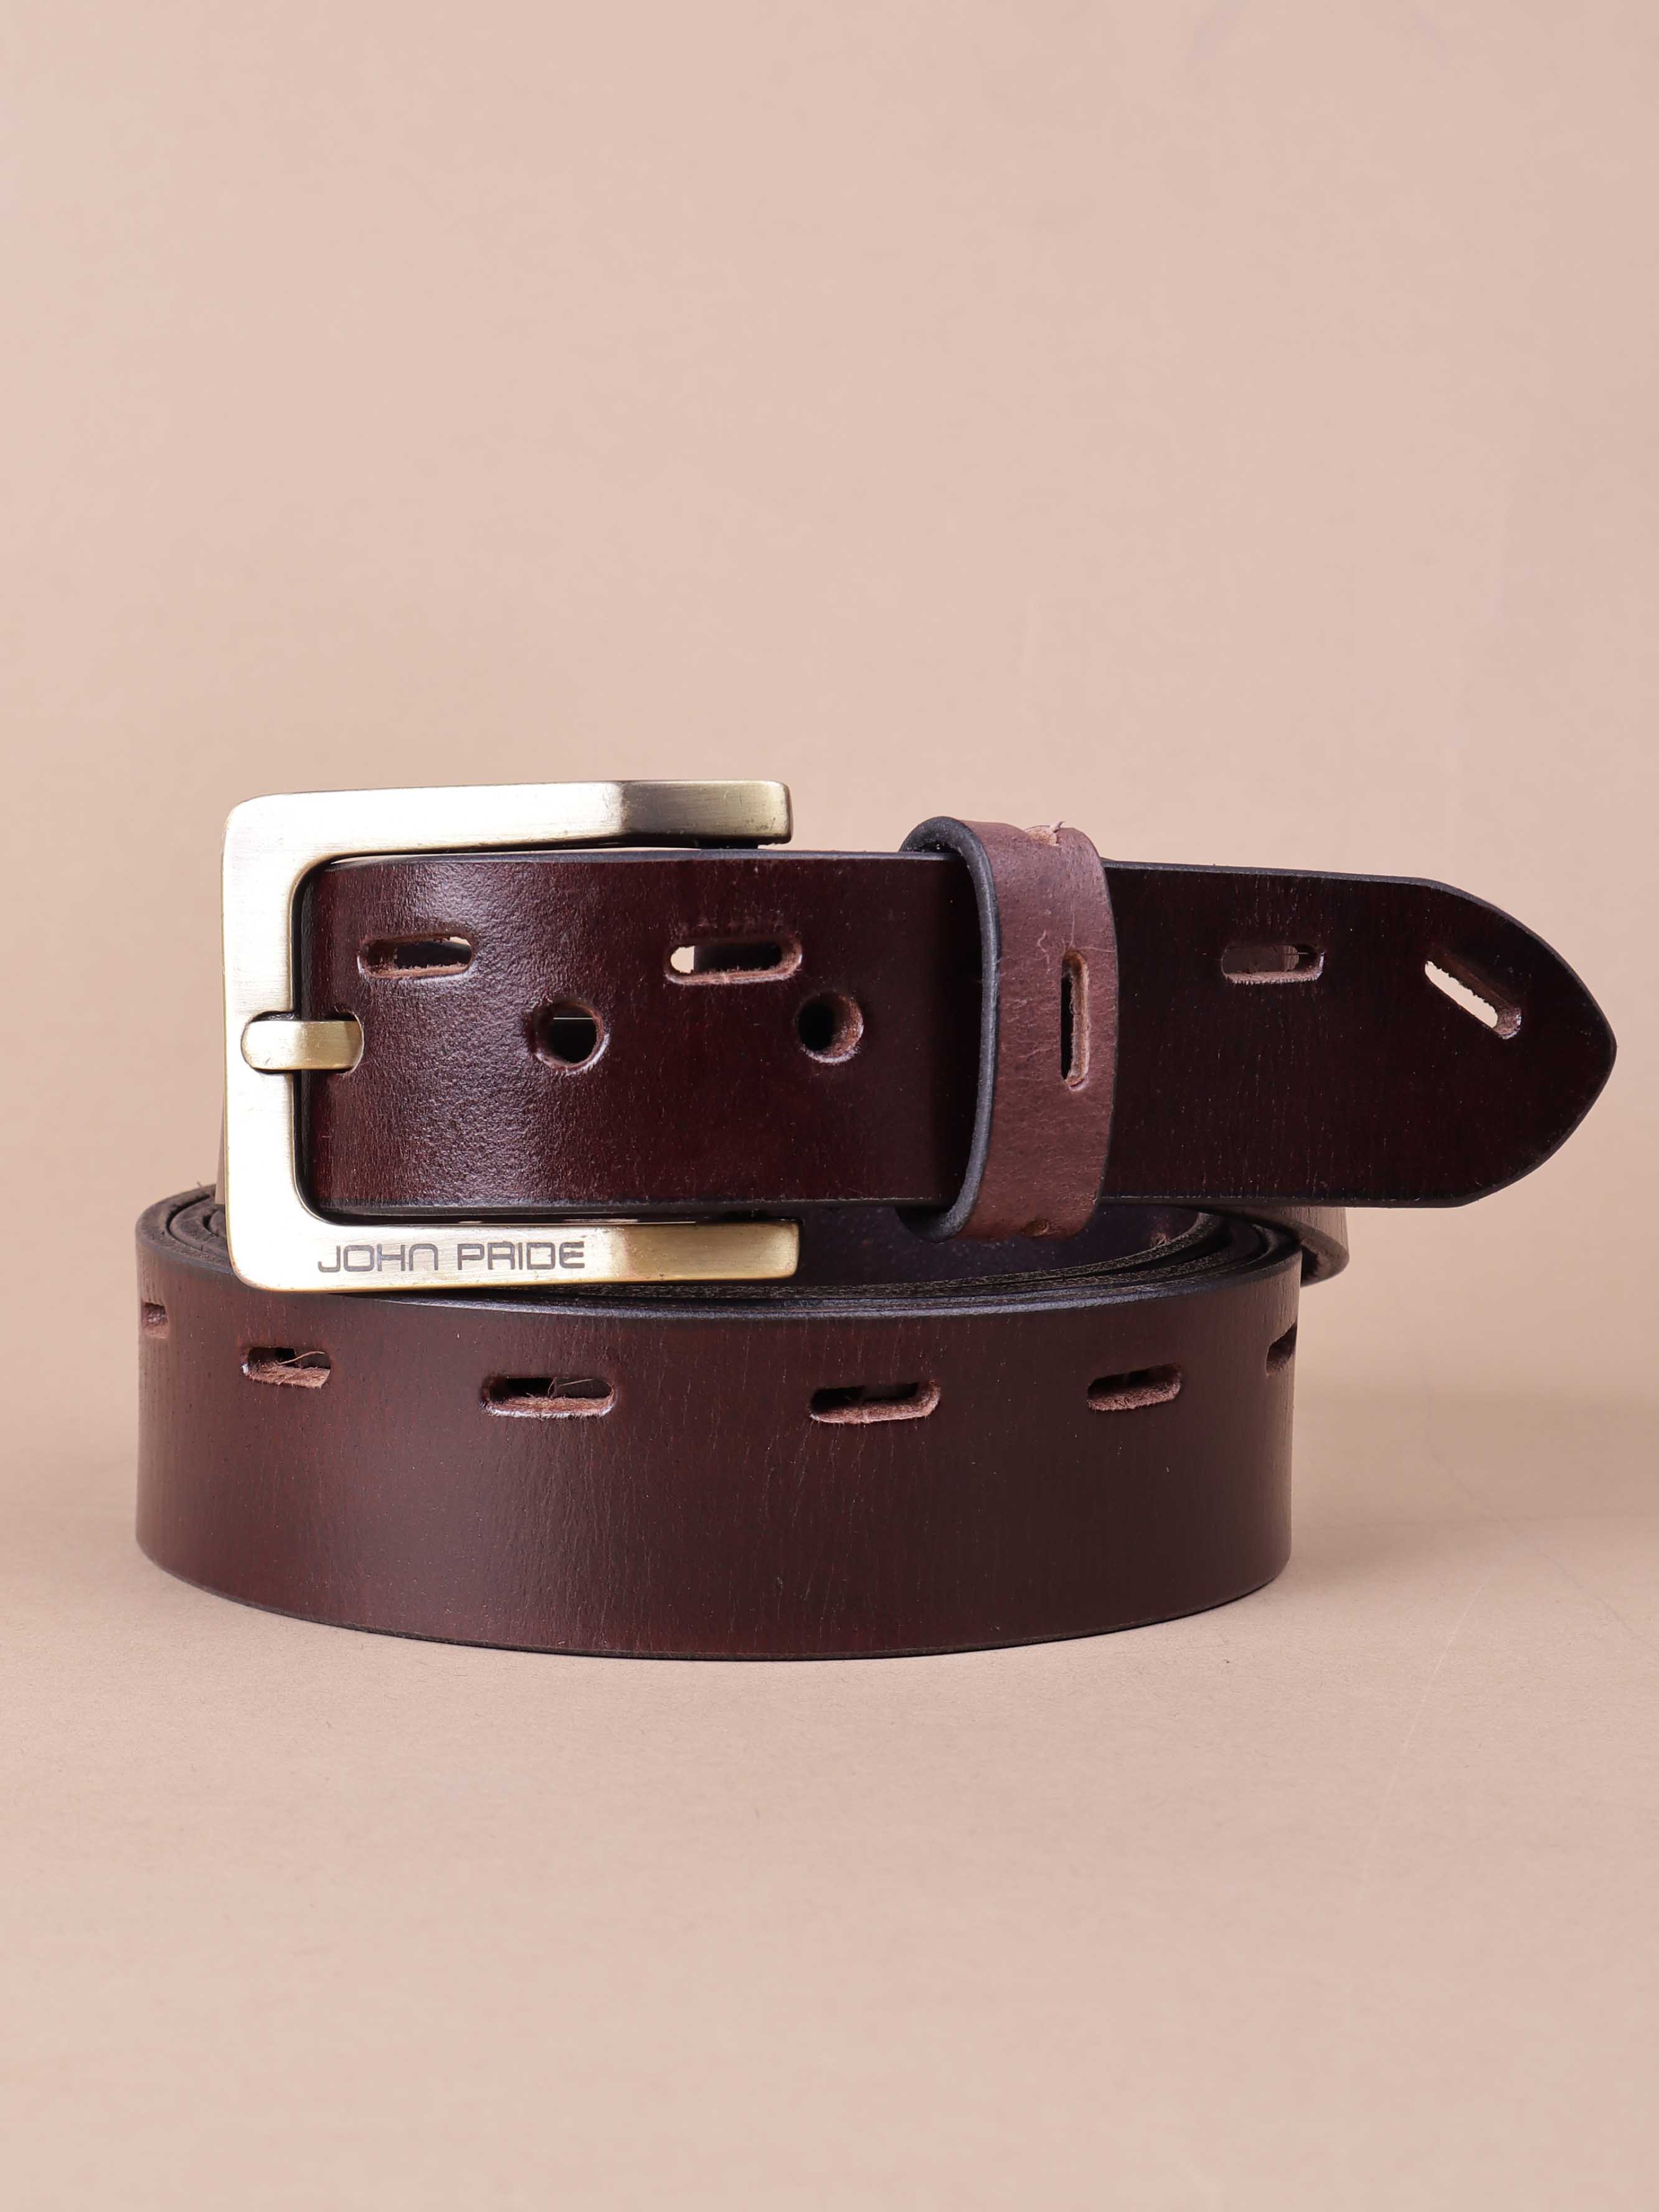 accessories/belts/JPBT1005/jpbt1005-4.jpg